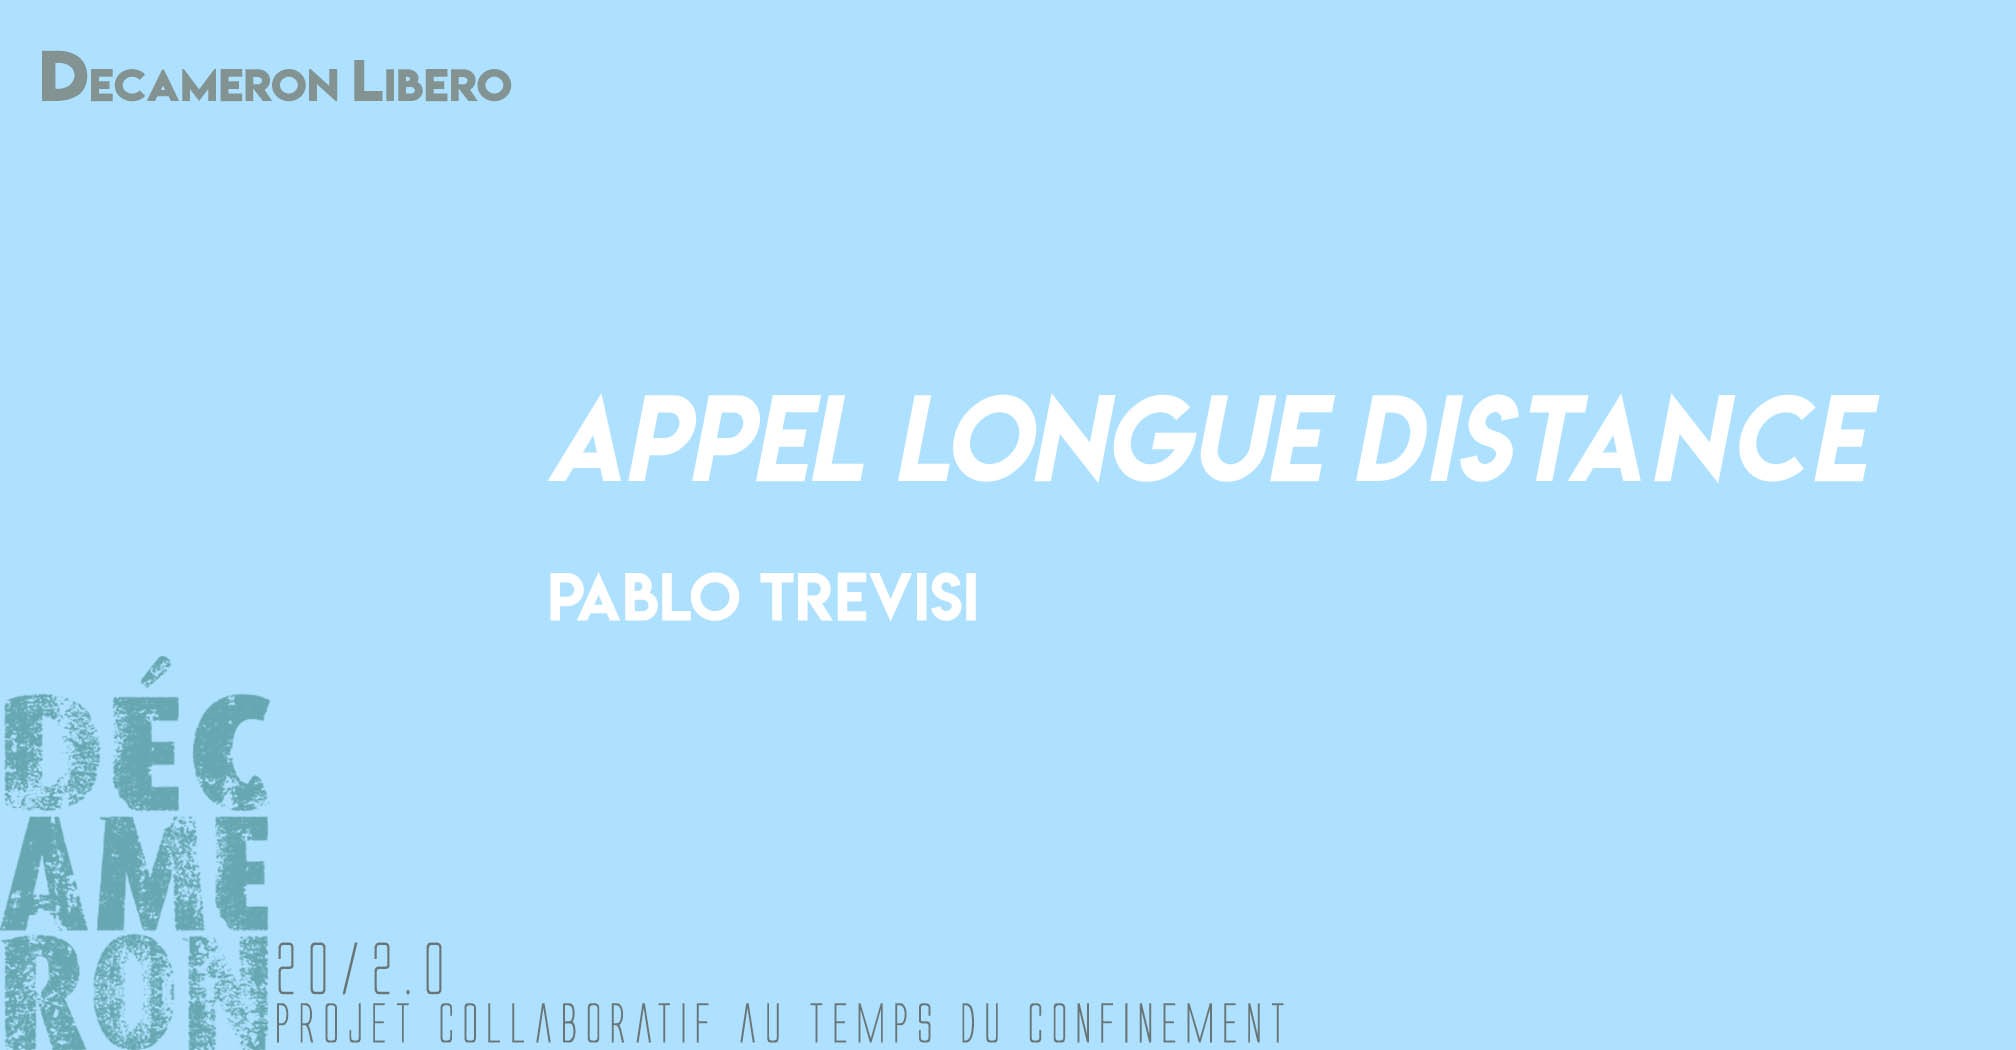 Appel longue distance - Pablo Trevisi